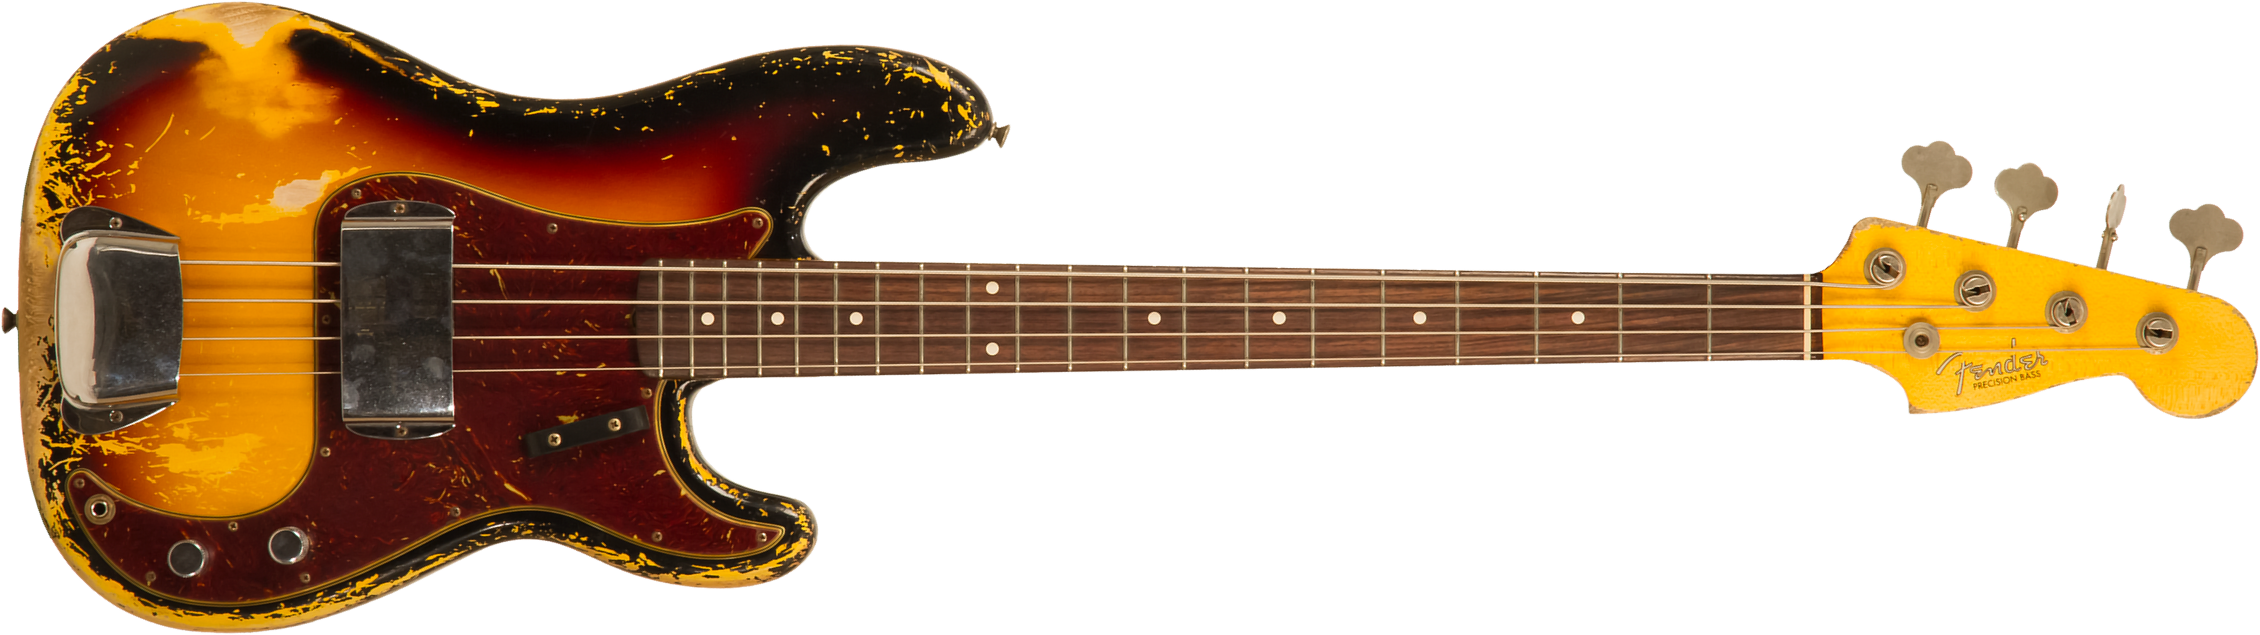 Fender Custom Shop Precision Bass 1962 Masterbuilt D.galuszka Rw #r119482 - Heavy Relic 3-color Sunburst - Basse Électrique Solid Body - Main picture